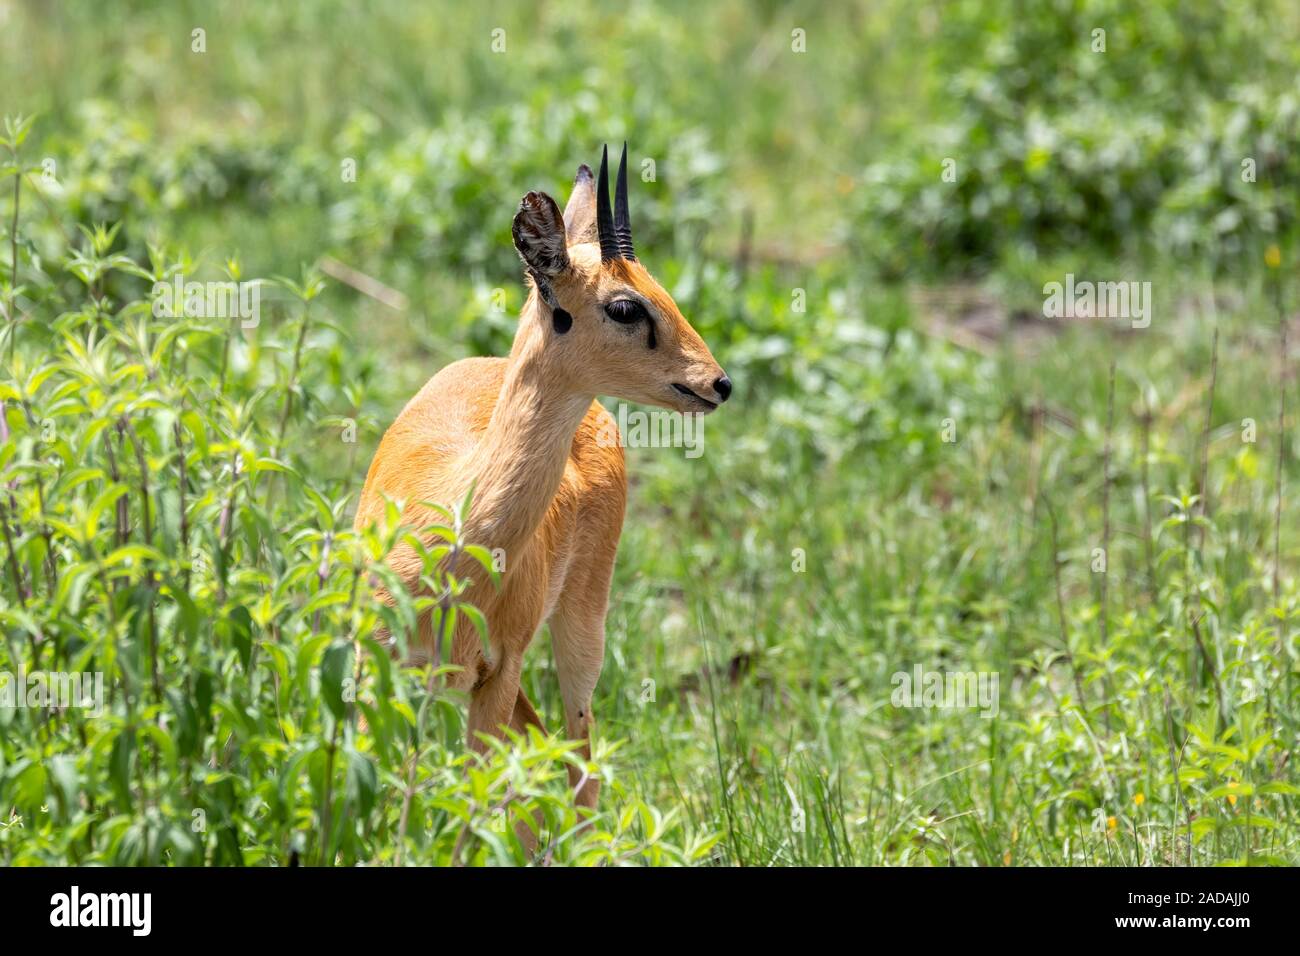 Oribi antelope Ethiopia, Africa wildlife Stock Photo